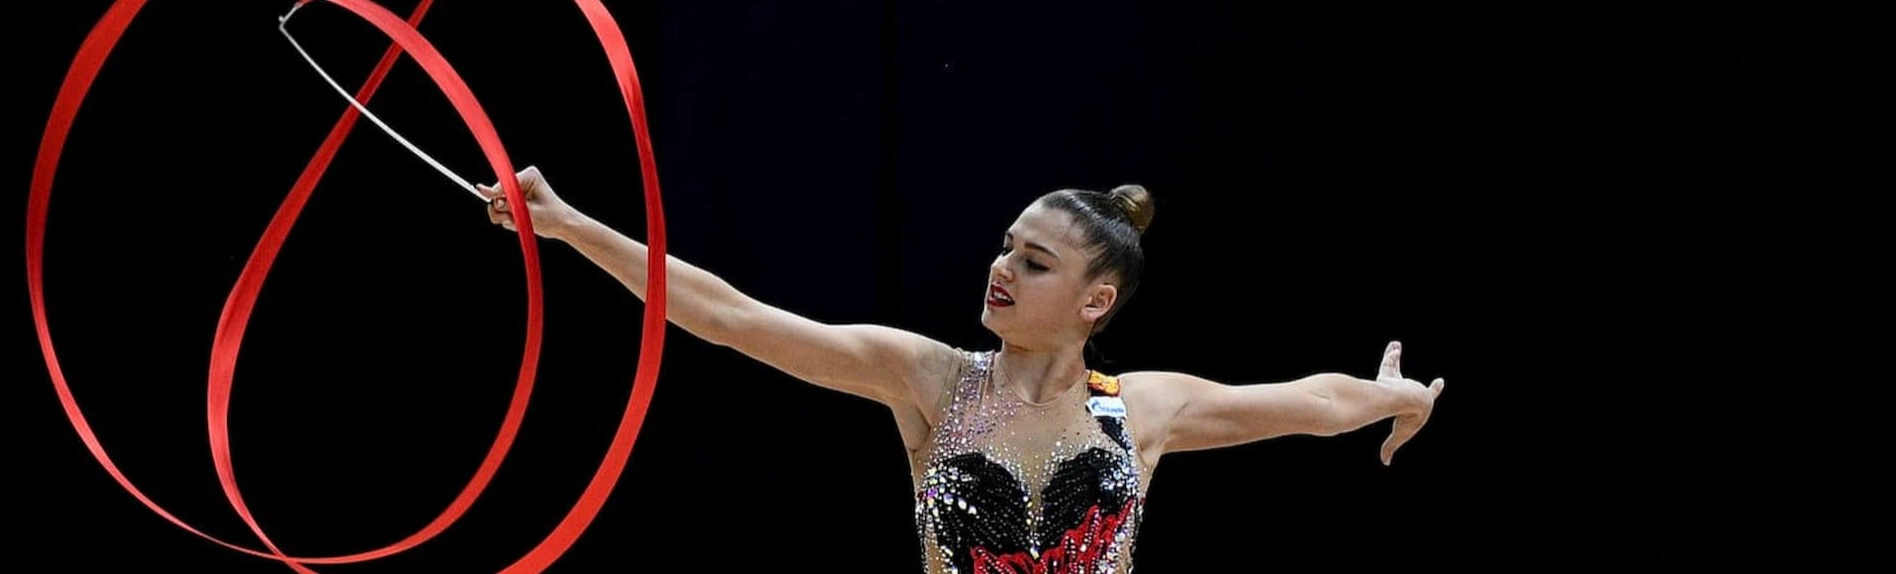 Александра Солдатова объявила о завершении своей спортивной карьеры